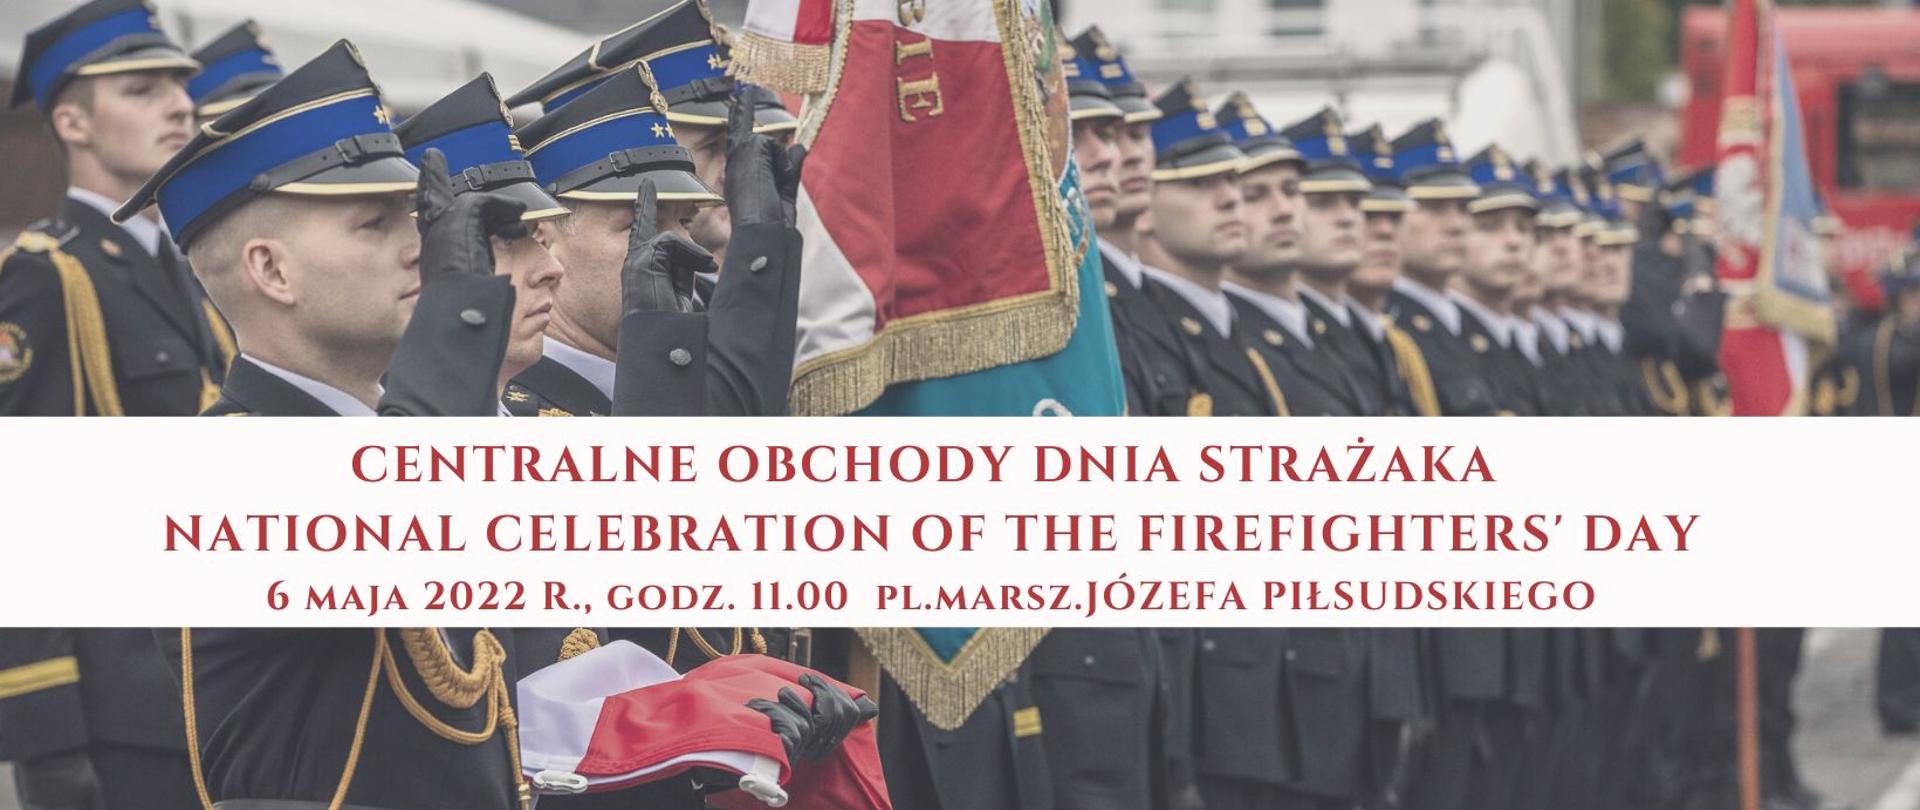 Na zdjęciu widać strażaków PSP w mundurach galowych, na pierwszym planie poczet sztandarowy. Napis na zdjęciu: Centralne Obchody Dnia Strażaka. National celebration of the firefighters' day. 6 maja 2022 roku godz. 11.00 plac Marszałka Józefa Piłsudskiego 